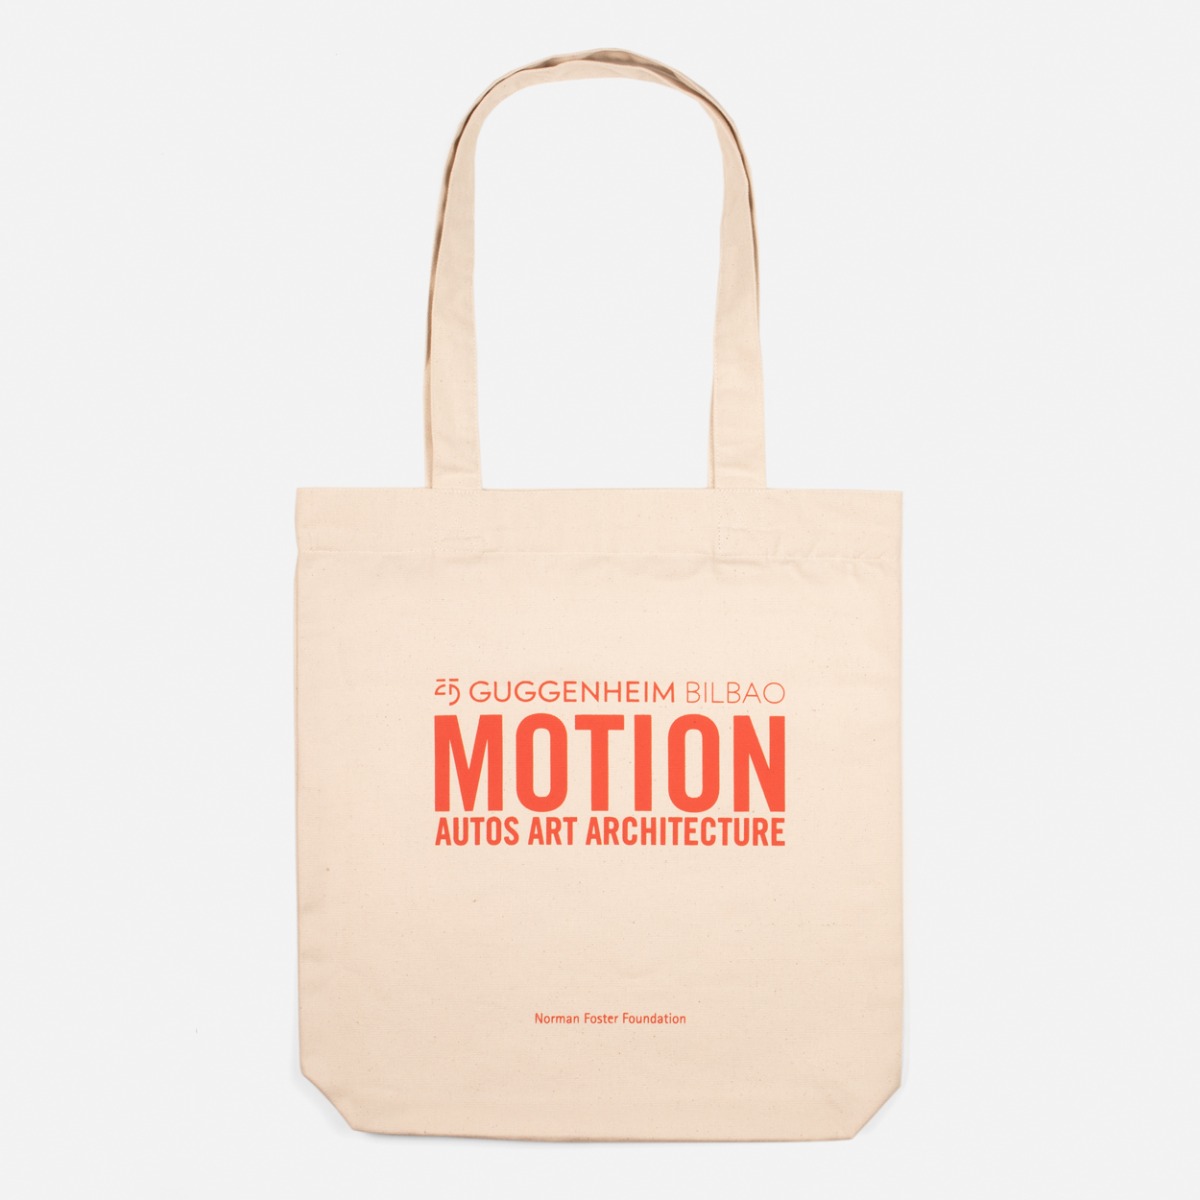 Motion bag